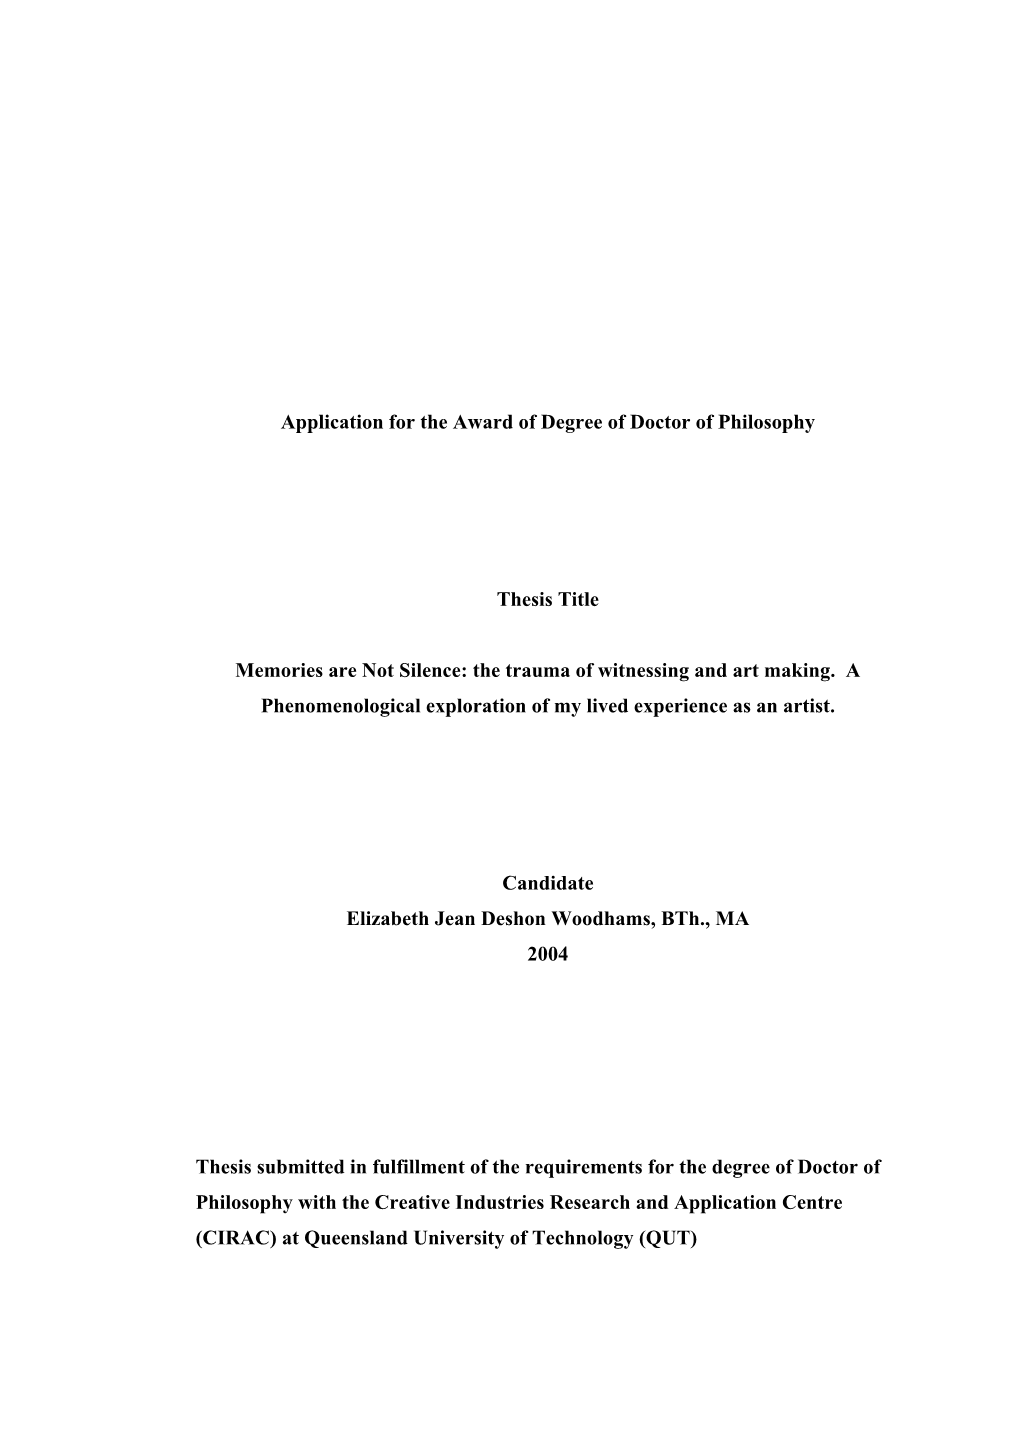 Elizabeth Woodhams Thesis (PDF 1MB)